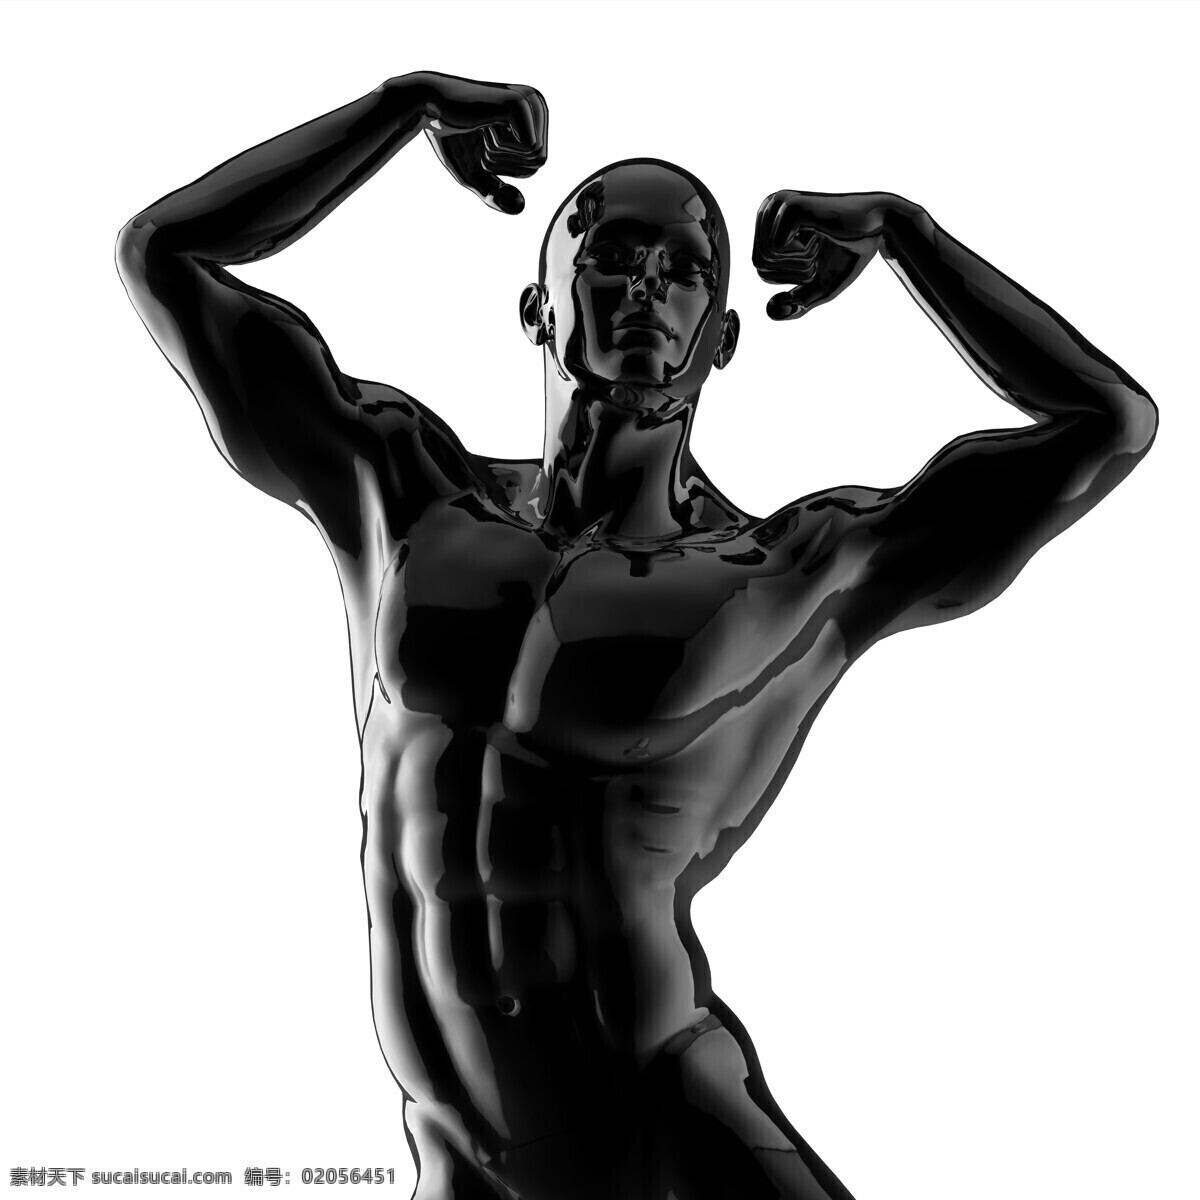 展示 肌肉 塑料 模型 男人 塑料模型 展示肌肉 健身 健壮 其他人物 人物图片